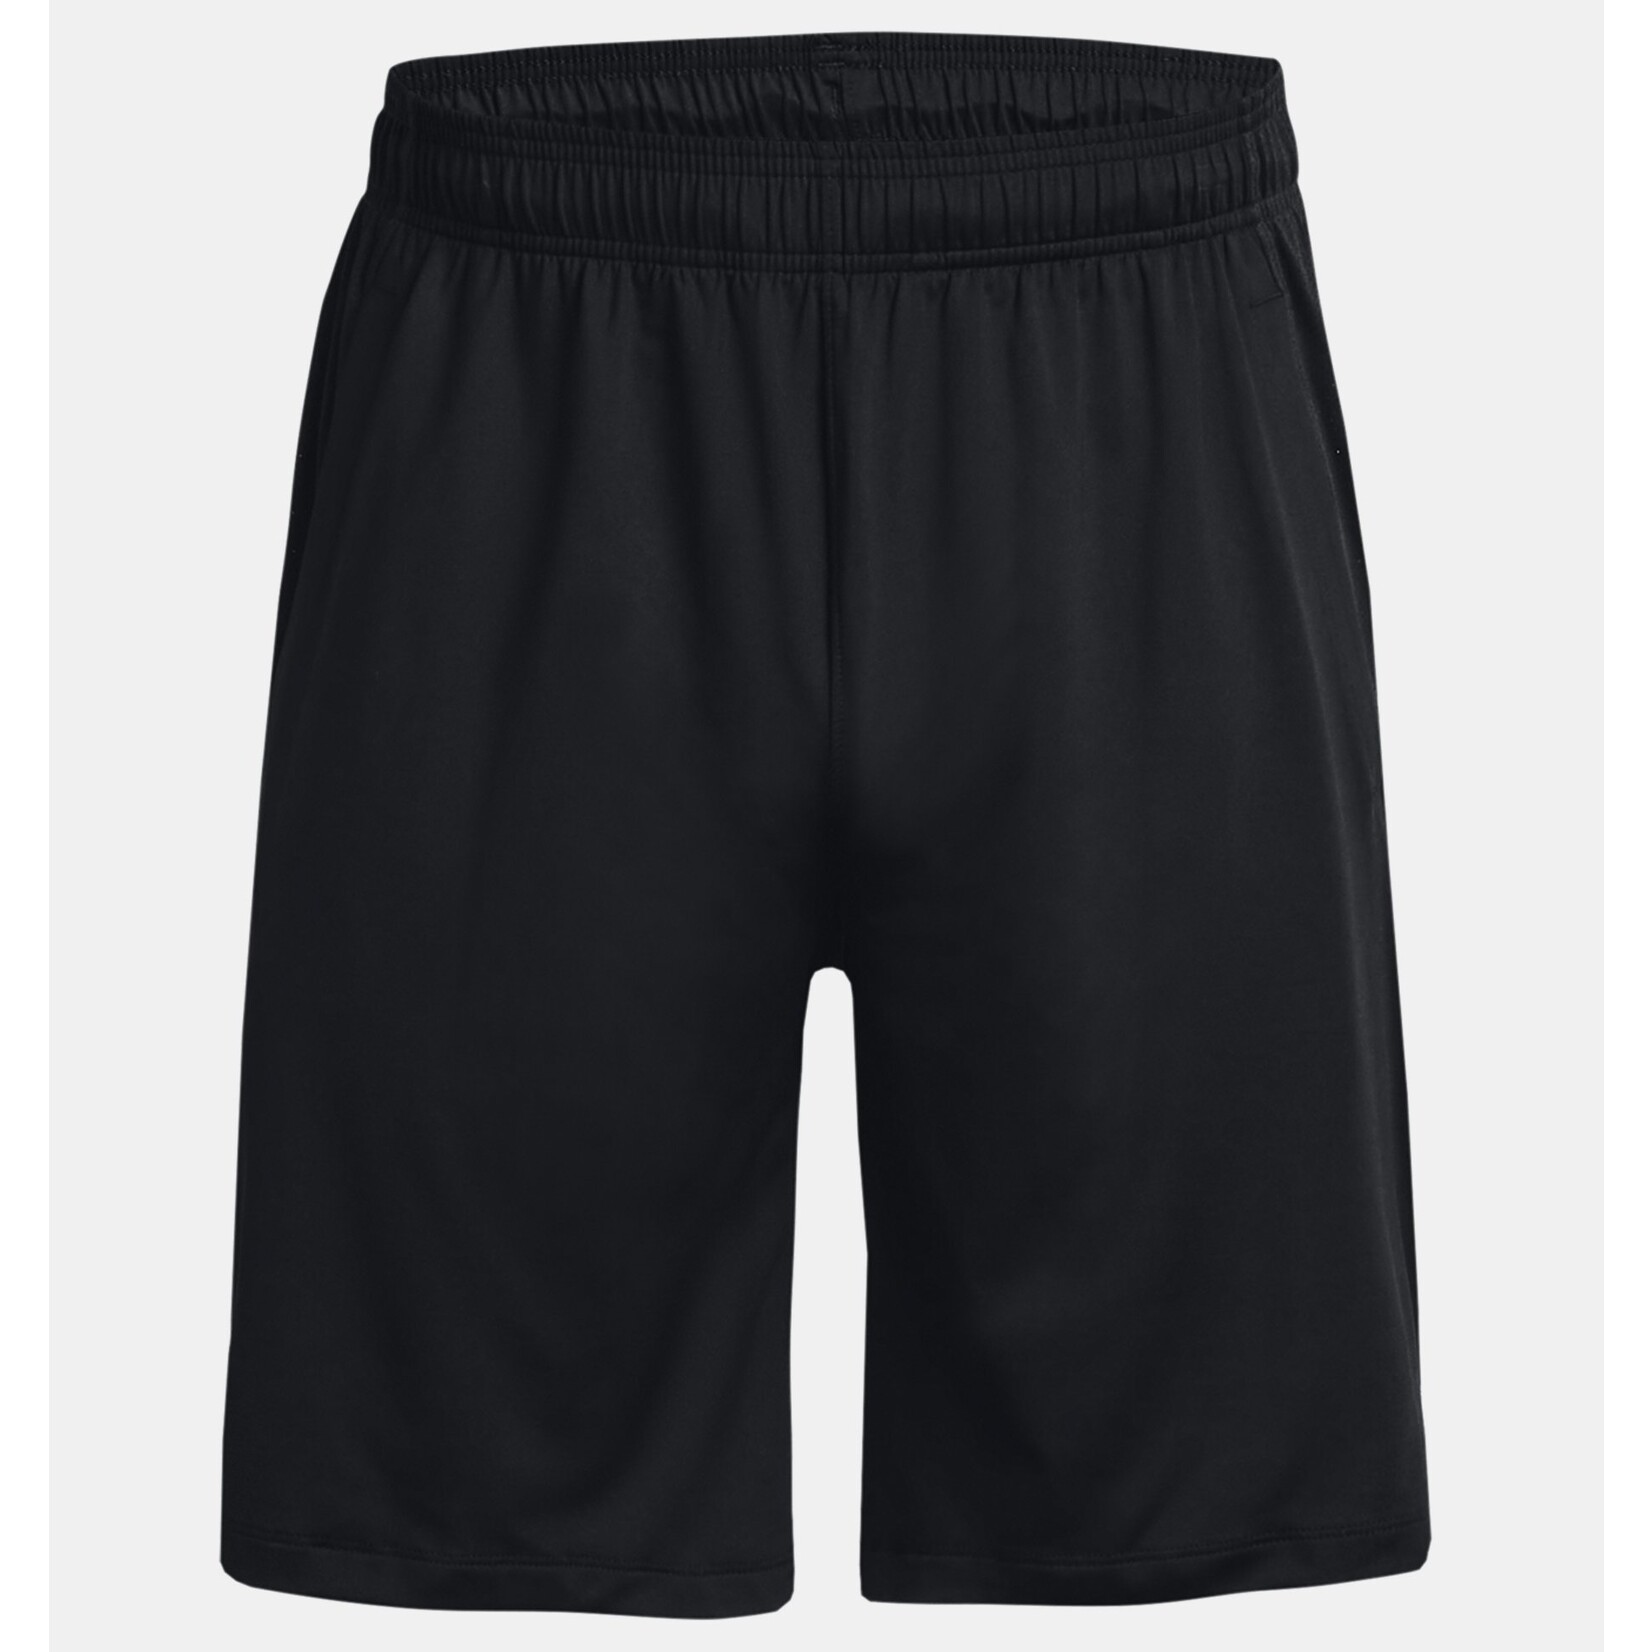 UNDER ARMOUR Men's UA Tech Vent Shorts